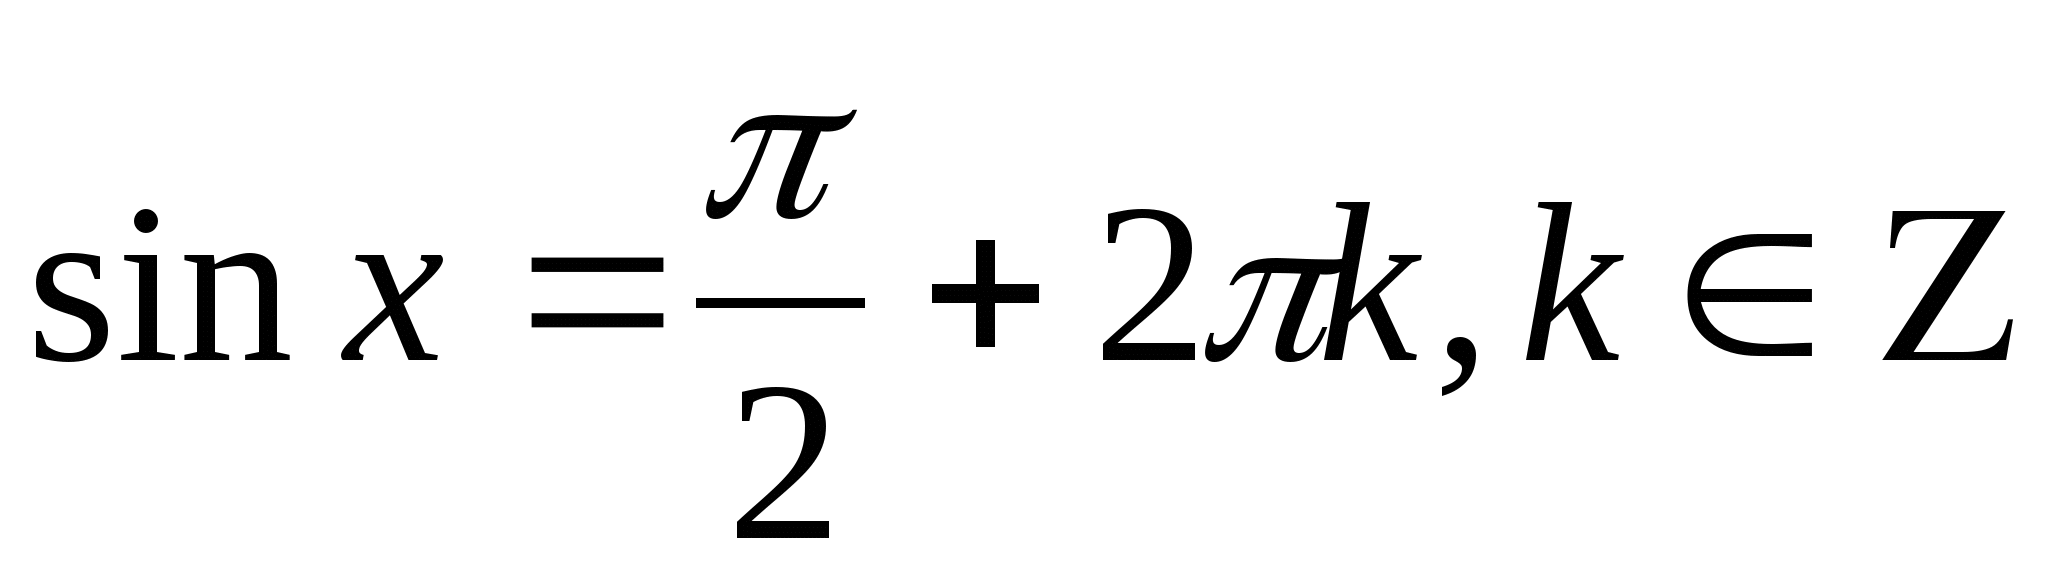 Справочные материалы по теме Некоторые приемы решения тригонометрических уравнений